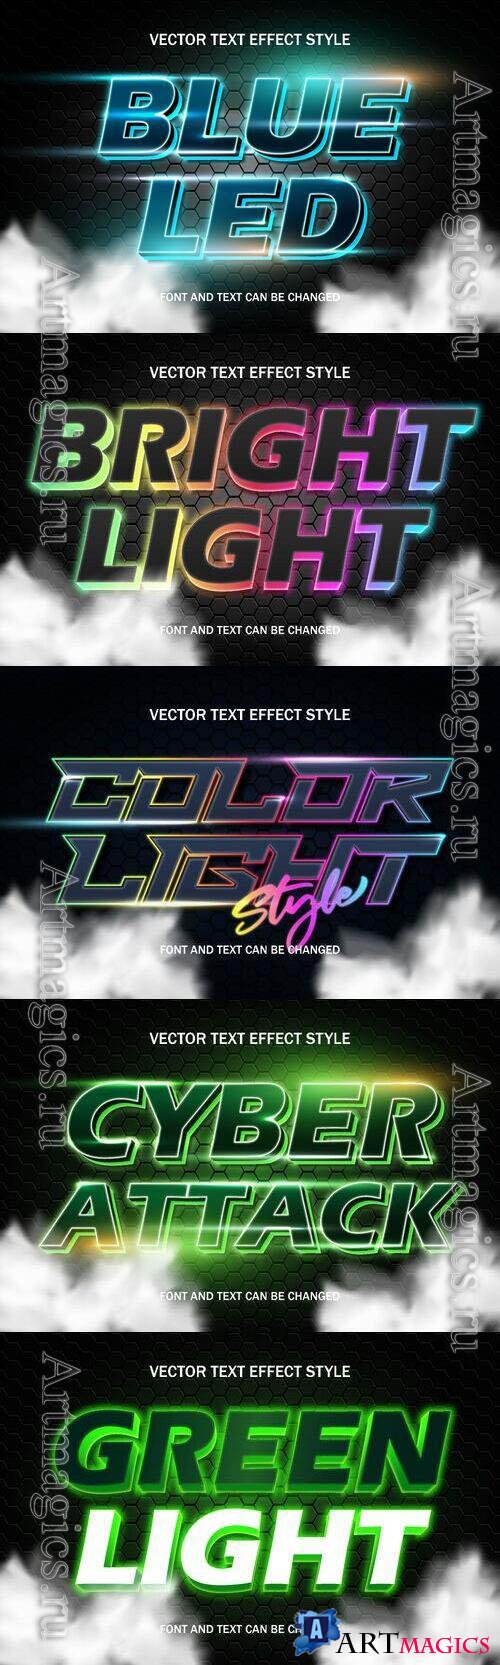 Vector 3d text editable, text effect font design
 set vol 80 